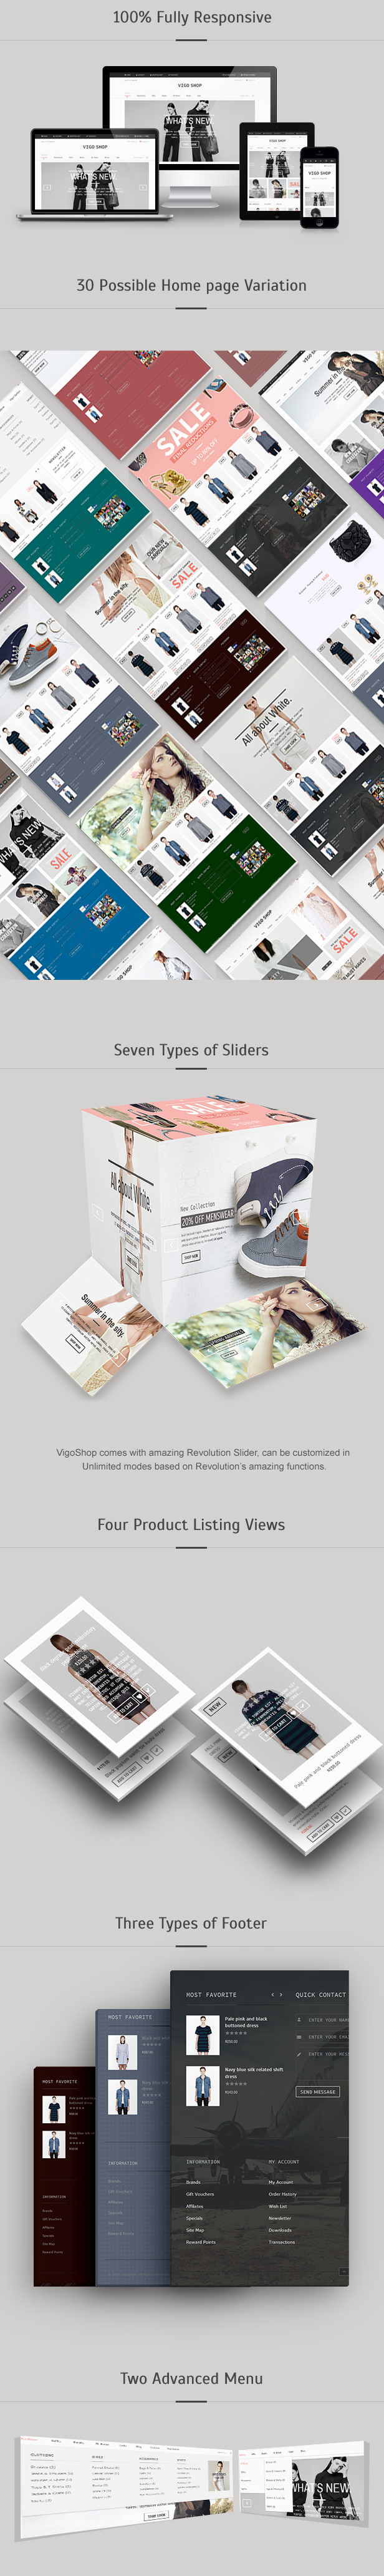 kalkoen ruw bezoeker Vigo Shop - Responsive & Multipurpose Joomla Theme by dasinfomedia